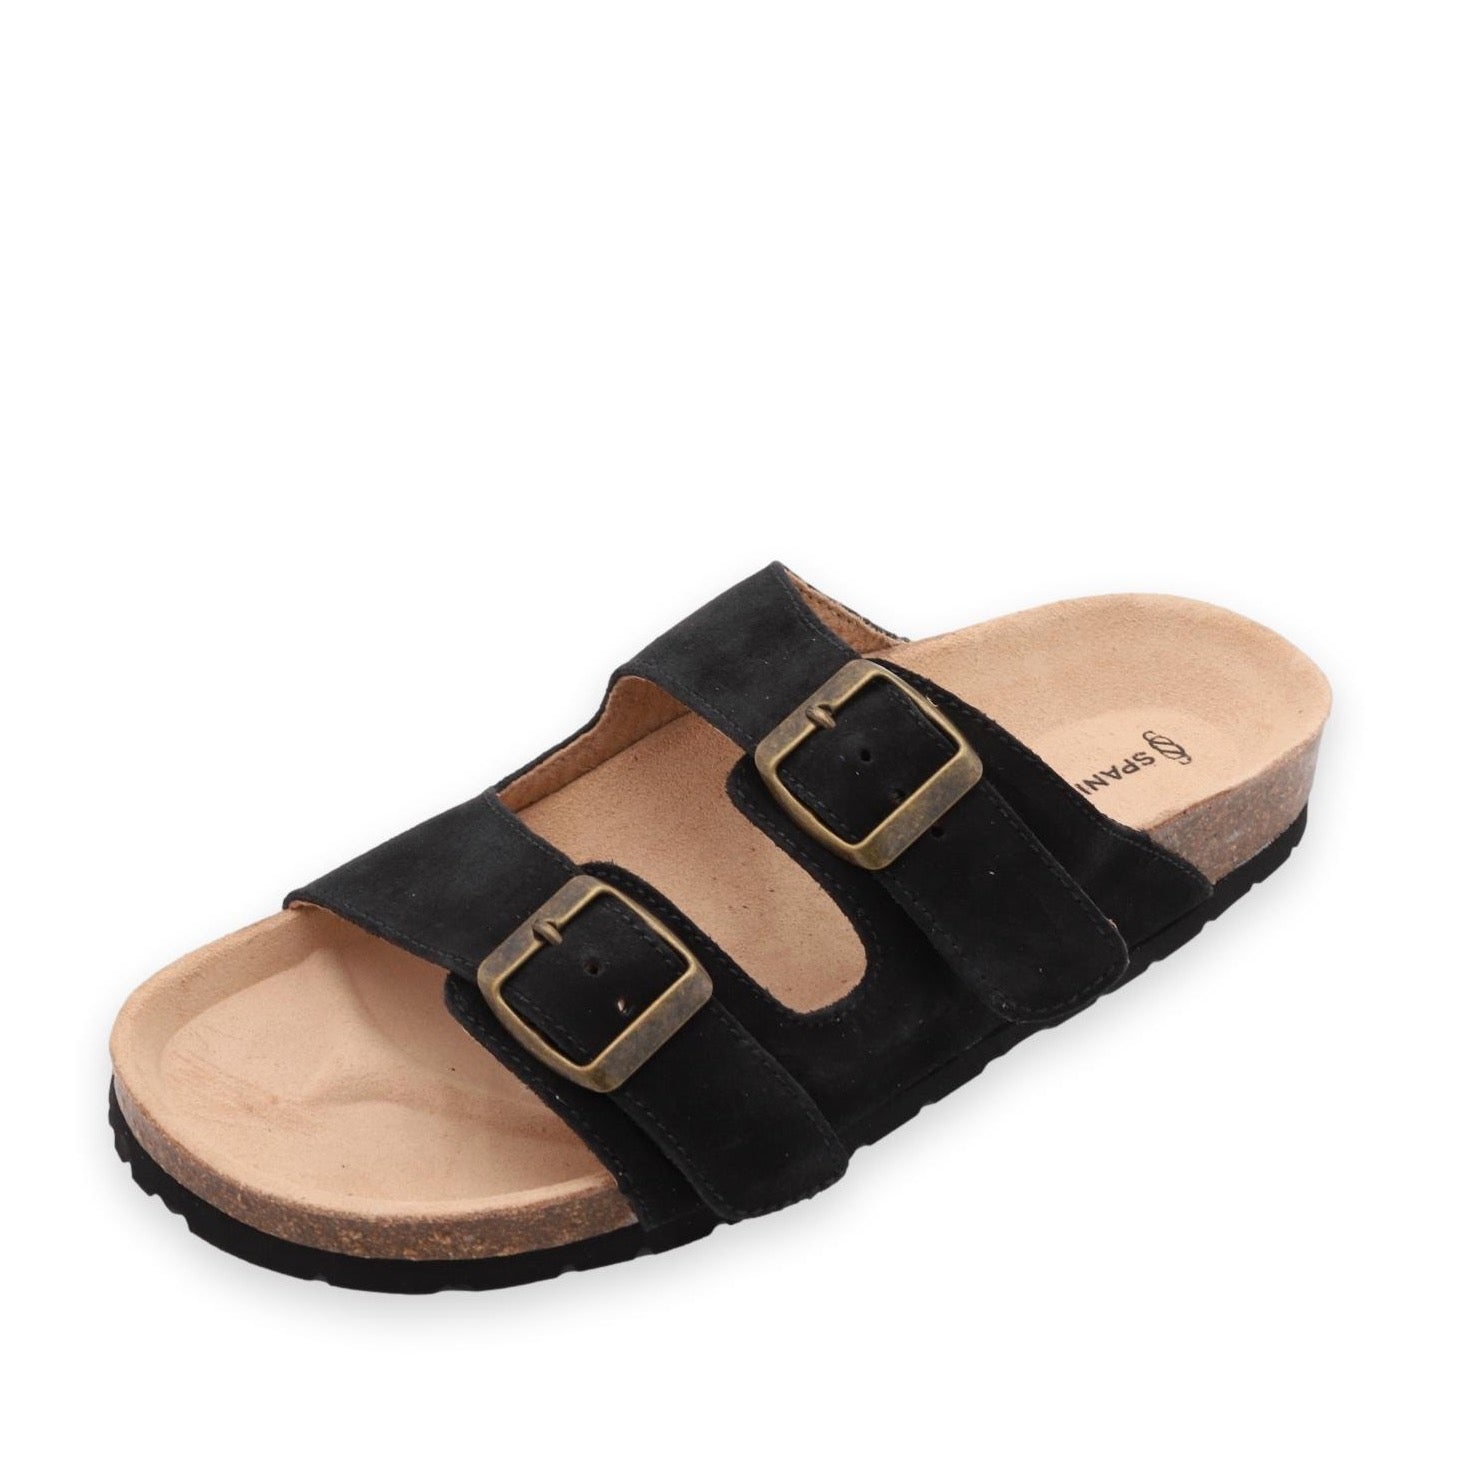 Nordic Black sandals